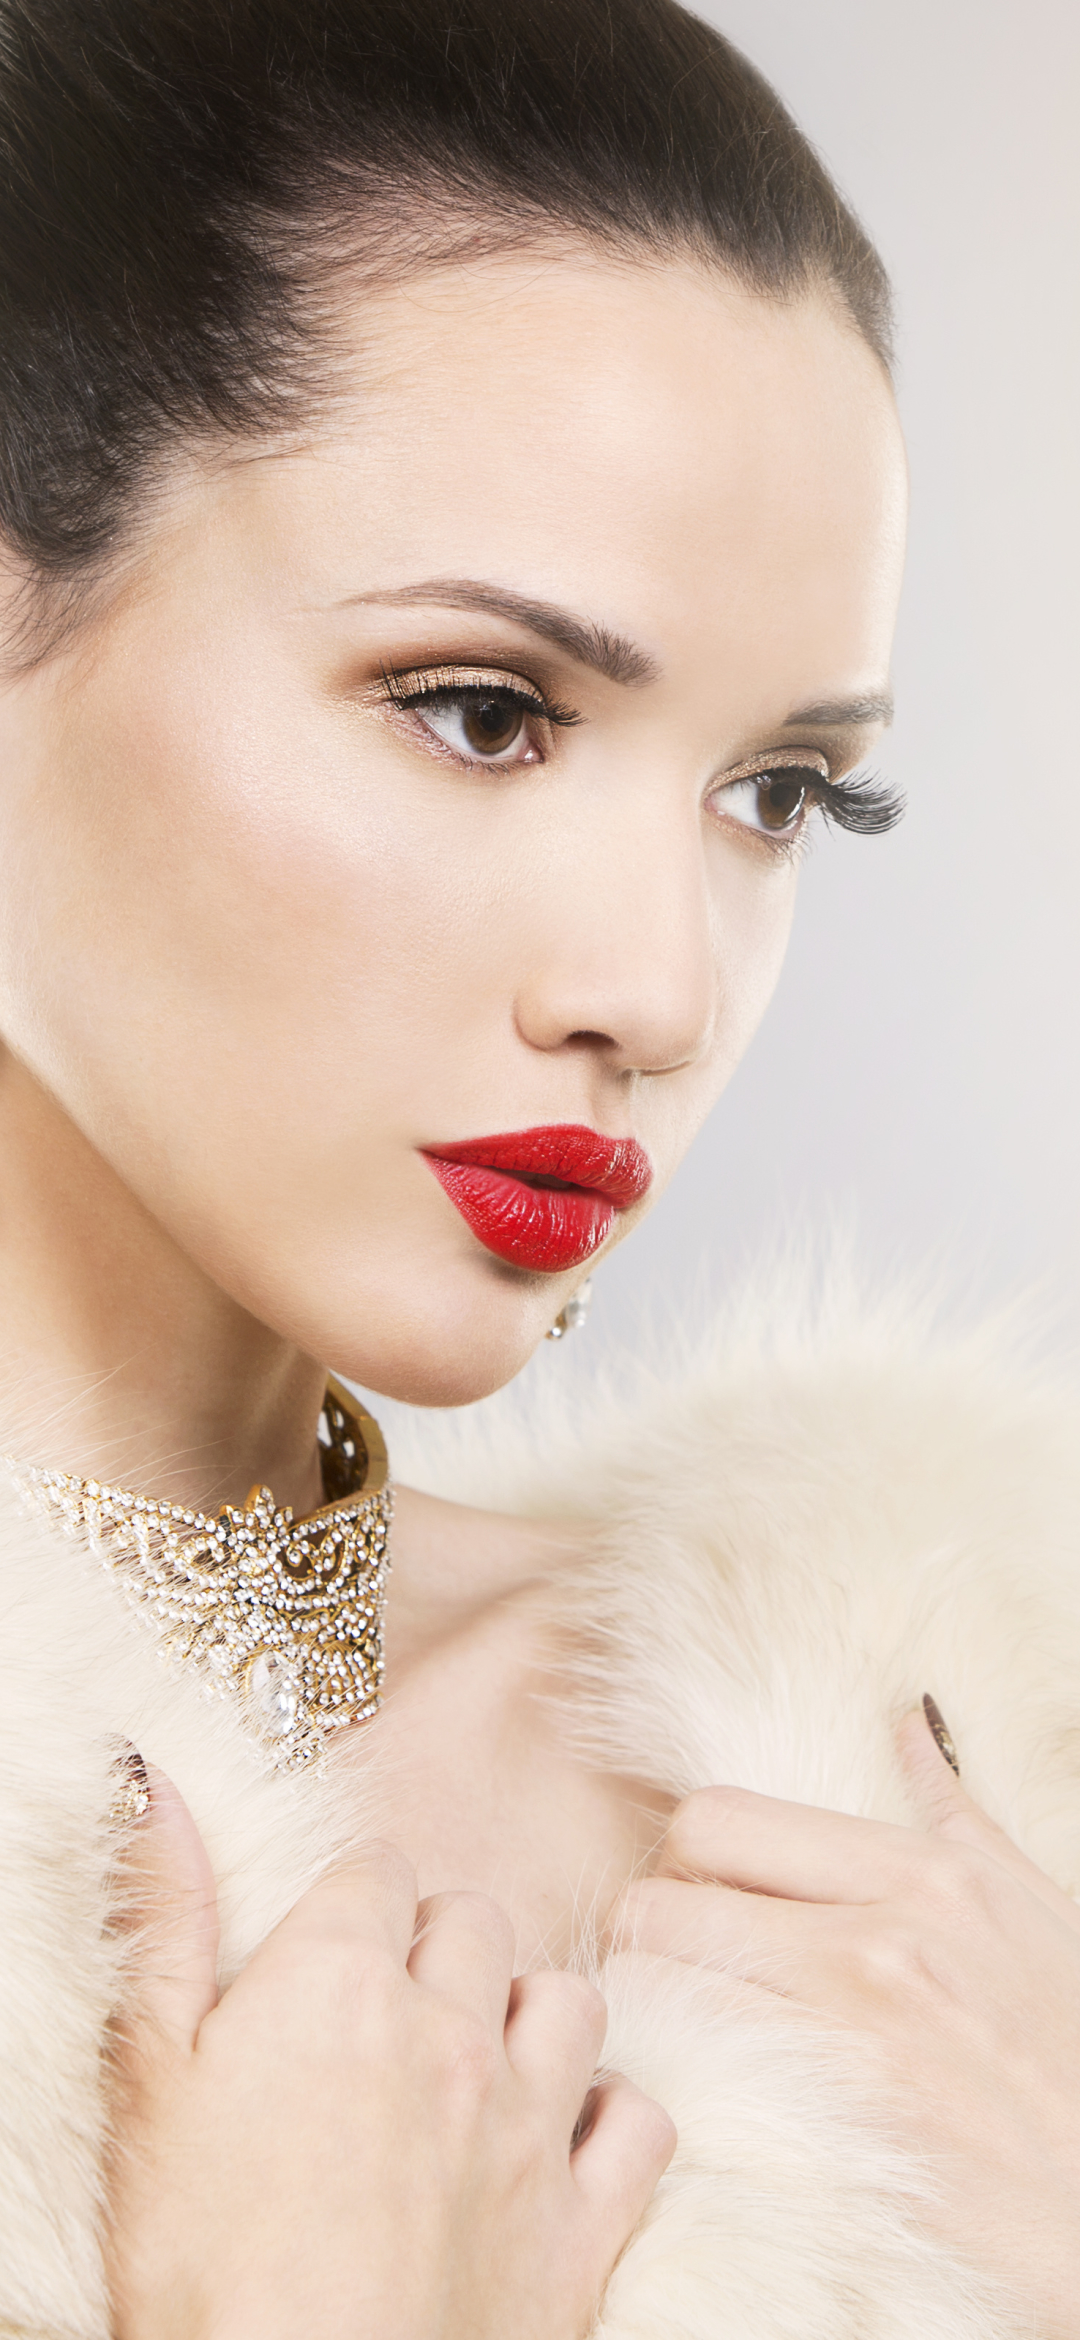 Download mobile wallpaper Jewelry, Face, Brunette, Model, Women, Earrings, Brown Eyes, Lipstick for free.